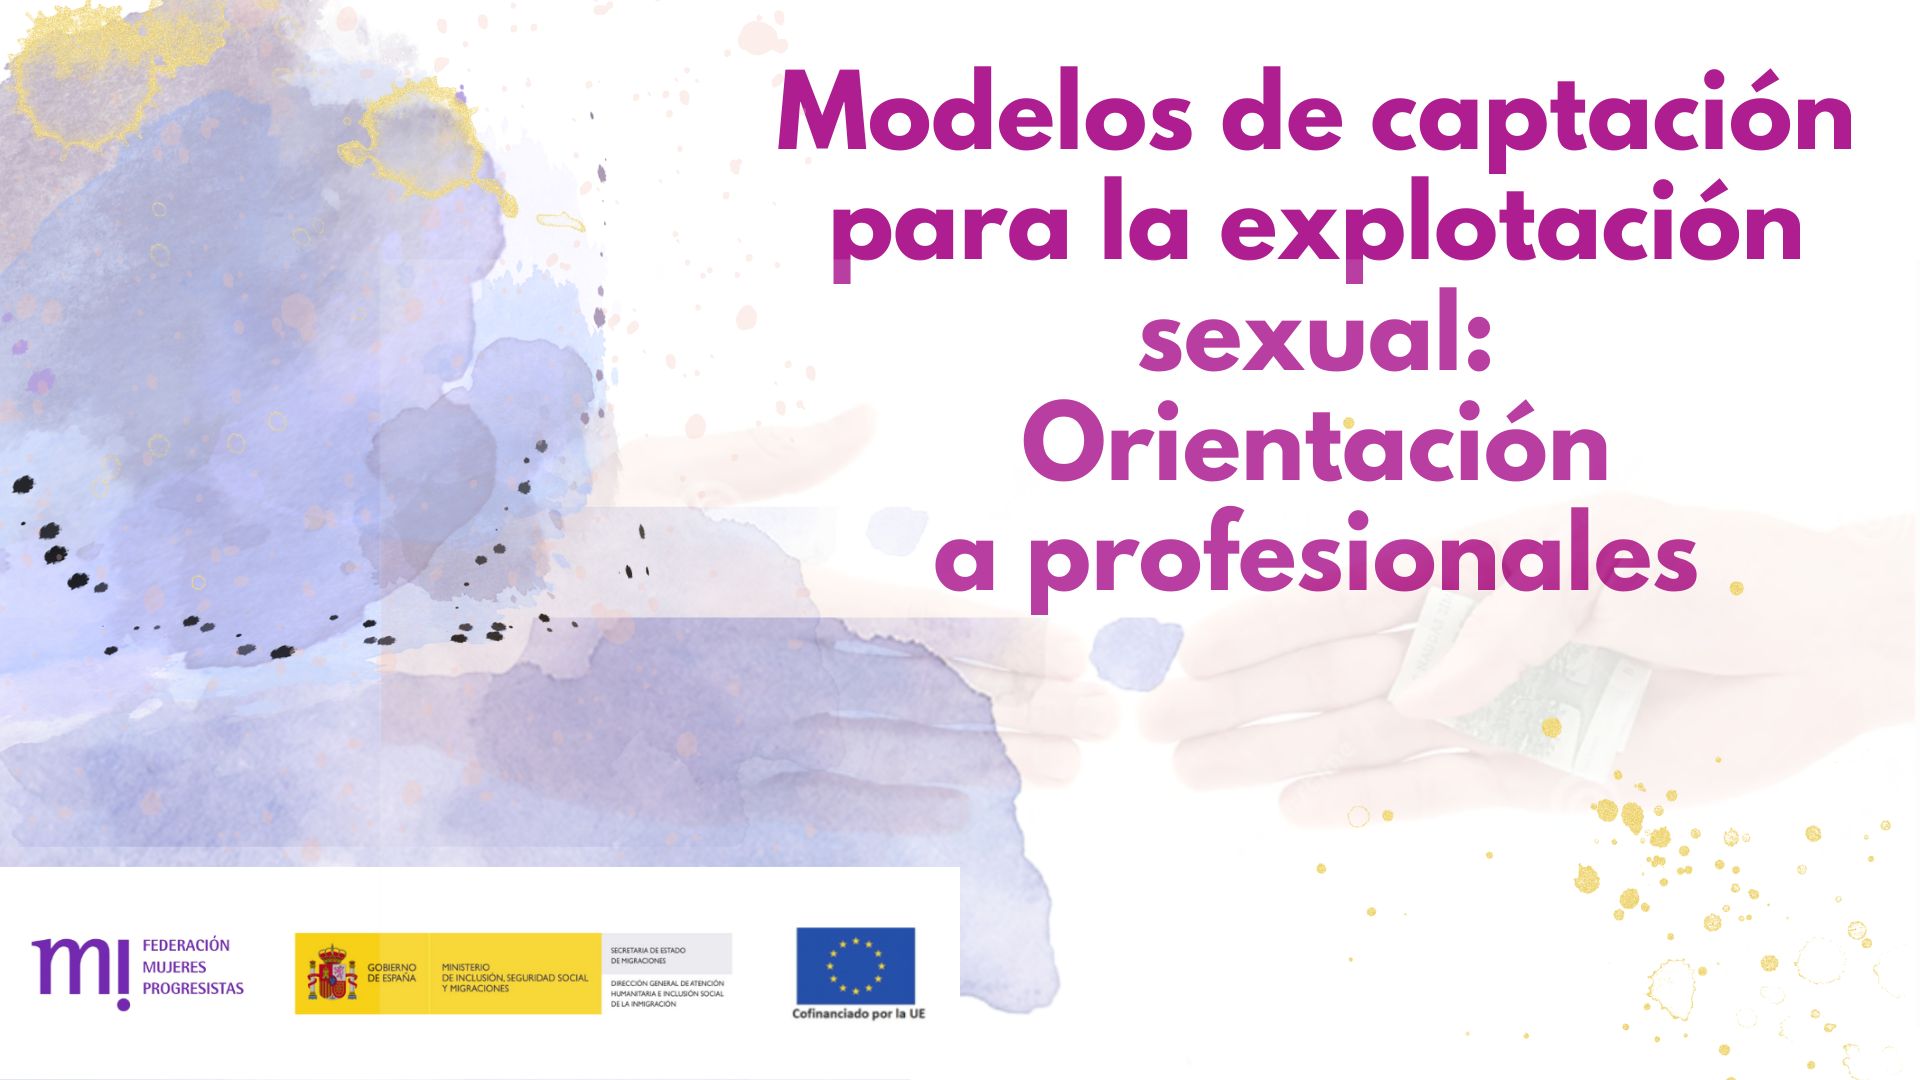 Course Image Modelos de captación para la explotación sexual: orientación a profesionales